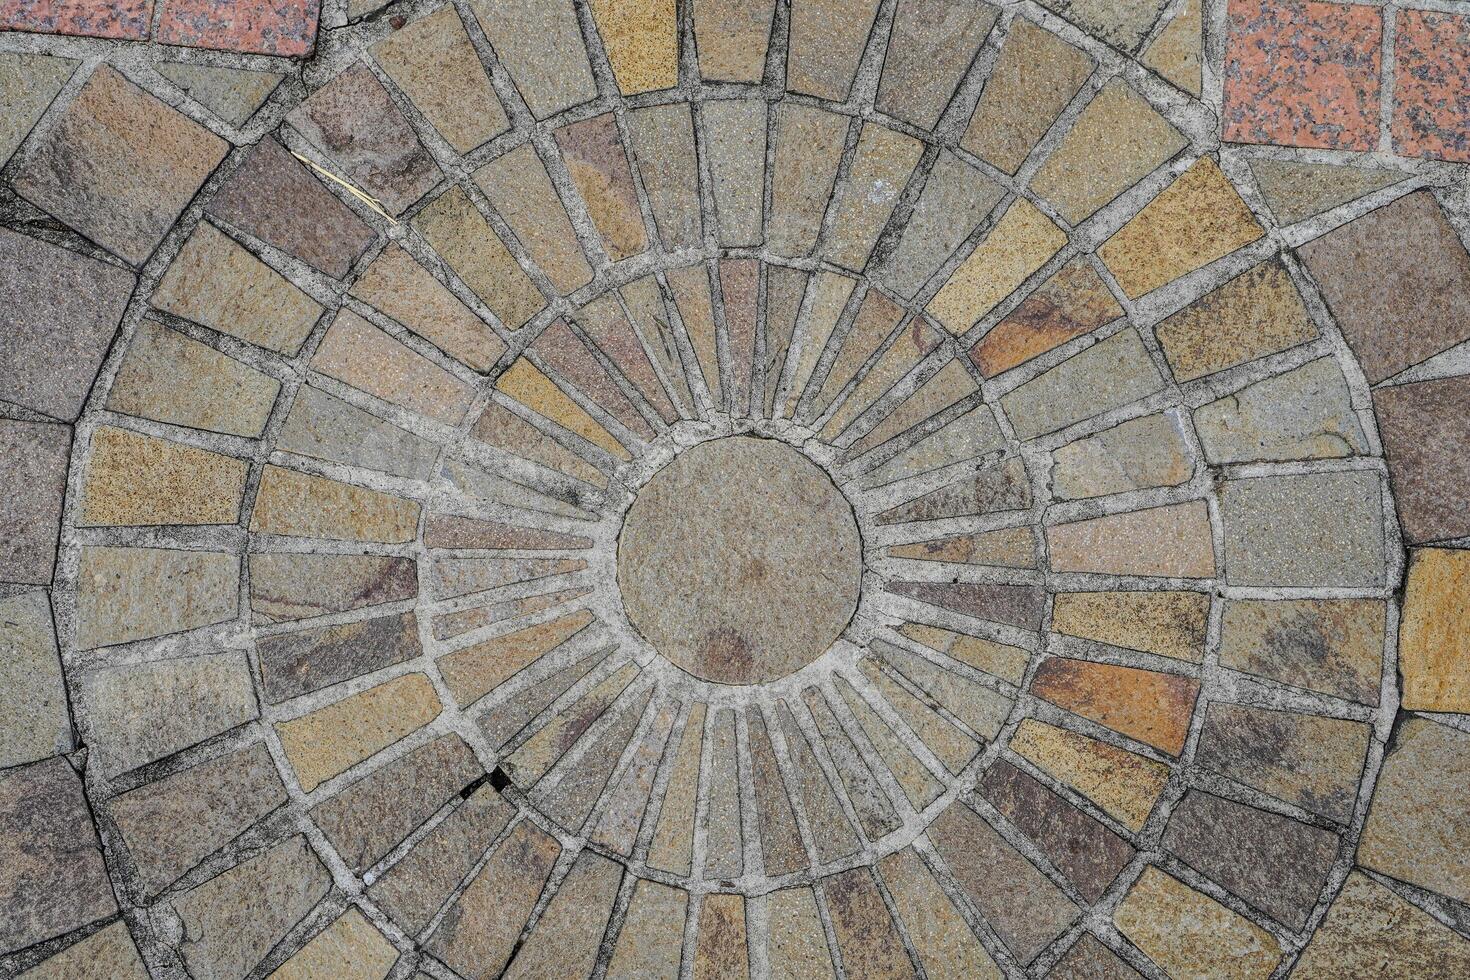 parte superior ver de el piso con natural Roca pulcramente arreglado con circular puntos a el publicaciones foto